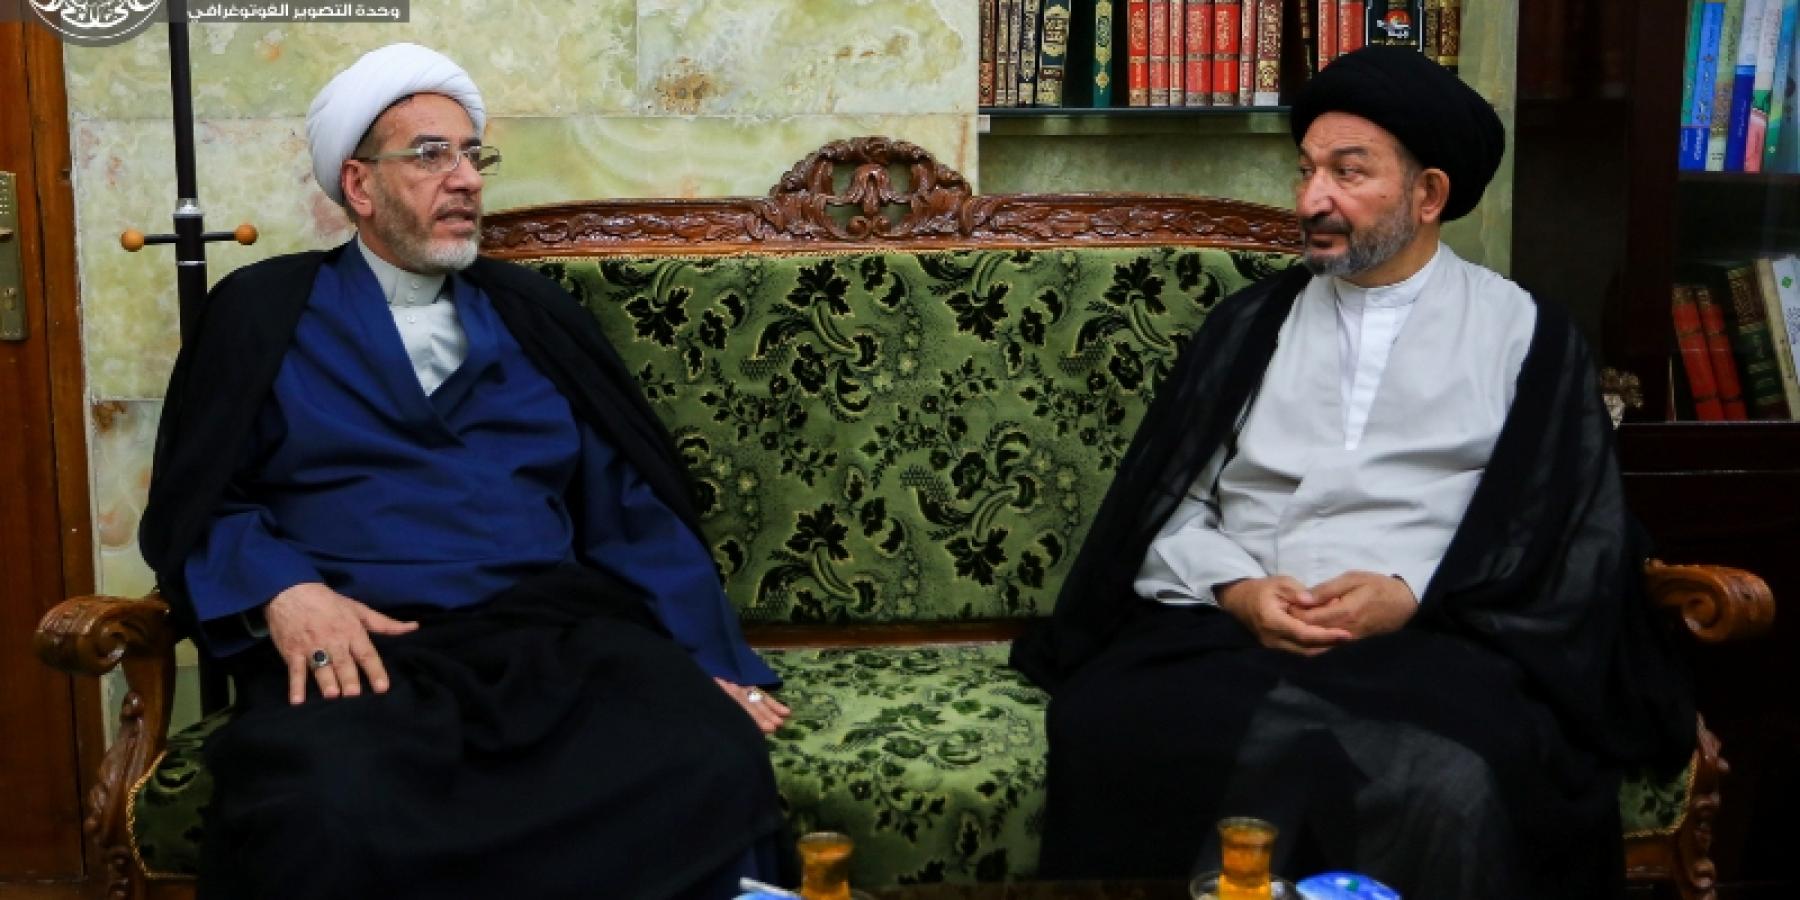 الأمين العام للعتبة العلوية المقدسة يستقبل وكيل رئيس ديوان الوقف الشيعي للشؤون الثقافية والدينية